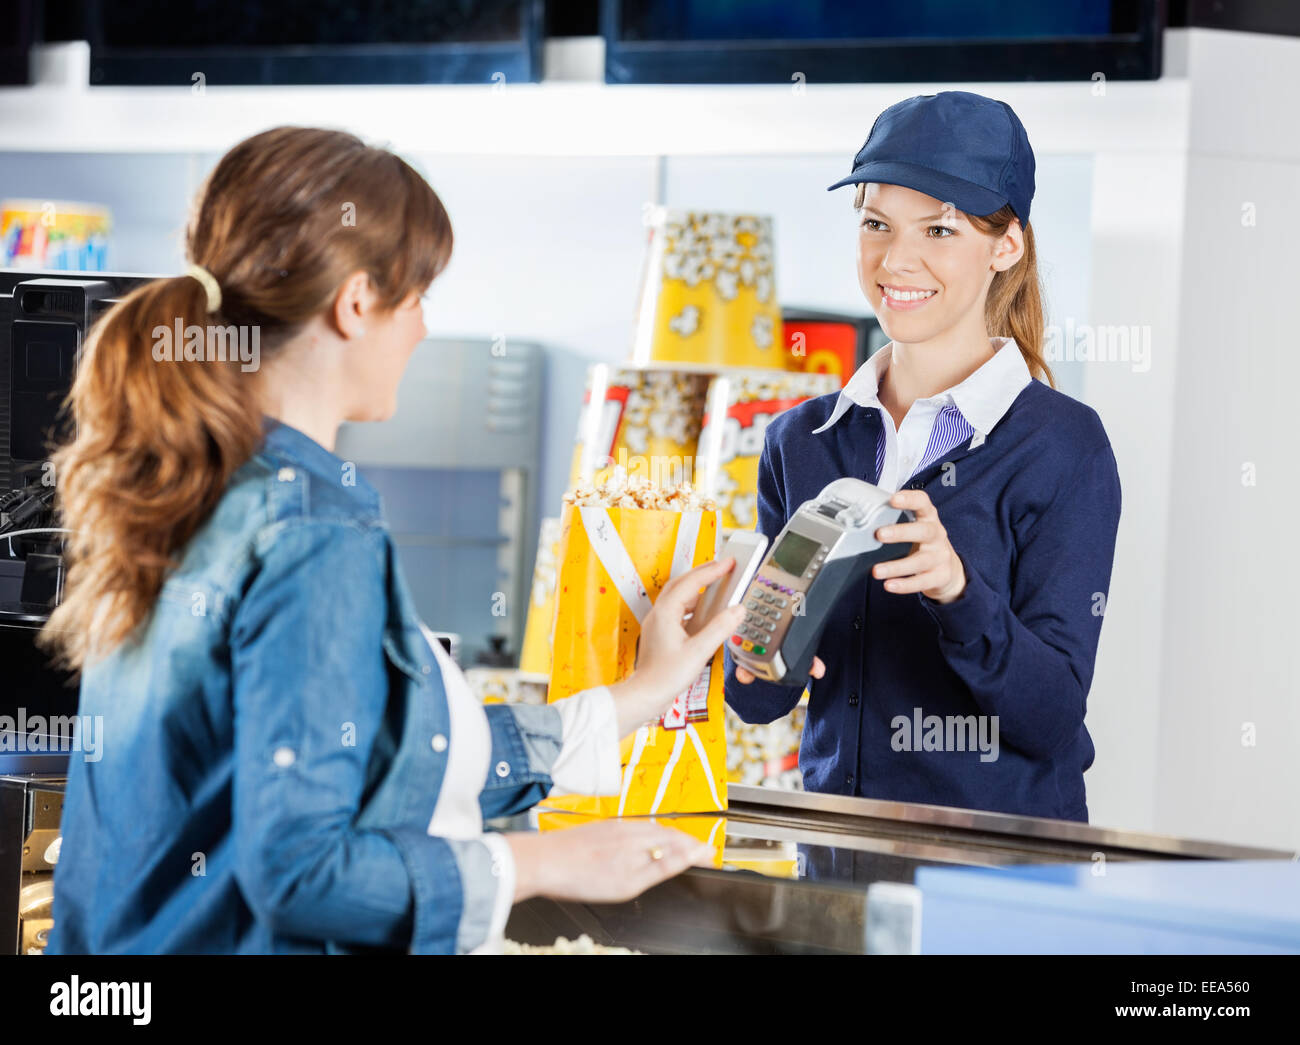 Lavoratore di accettare il pagamento da donna attraverso la tecnologia NFC a ci Foto Stock